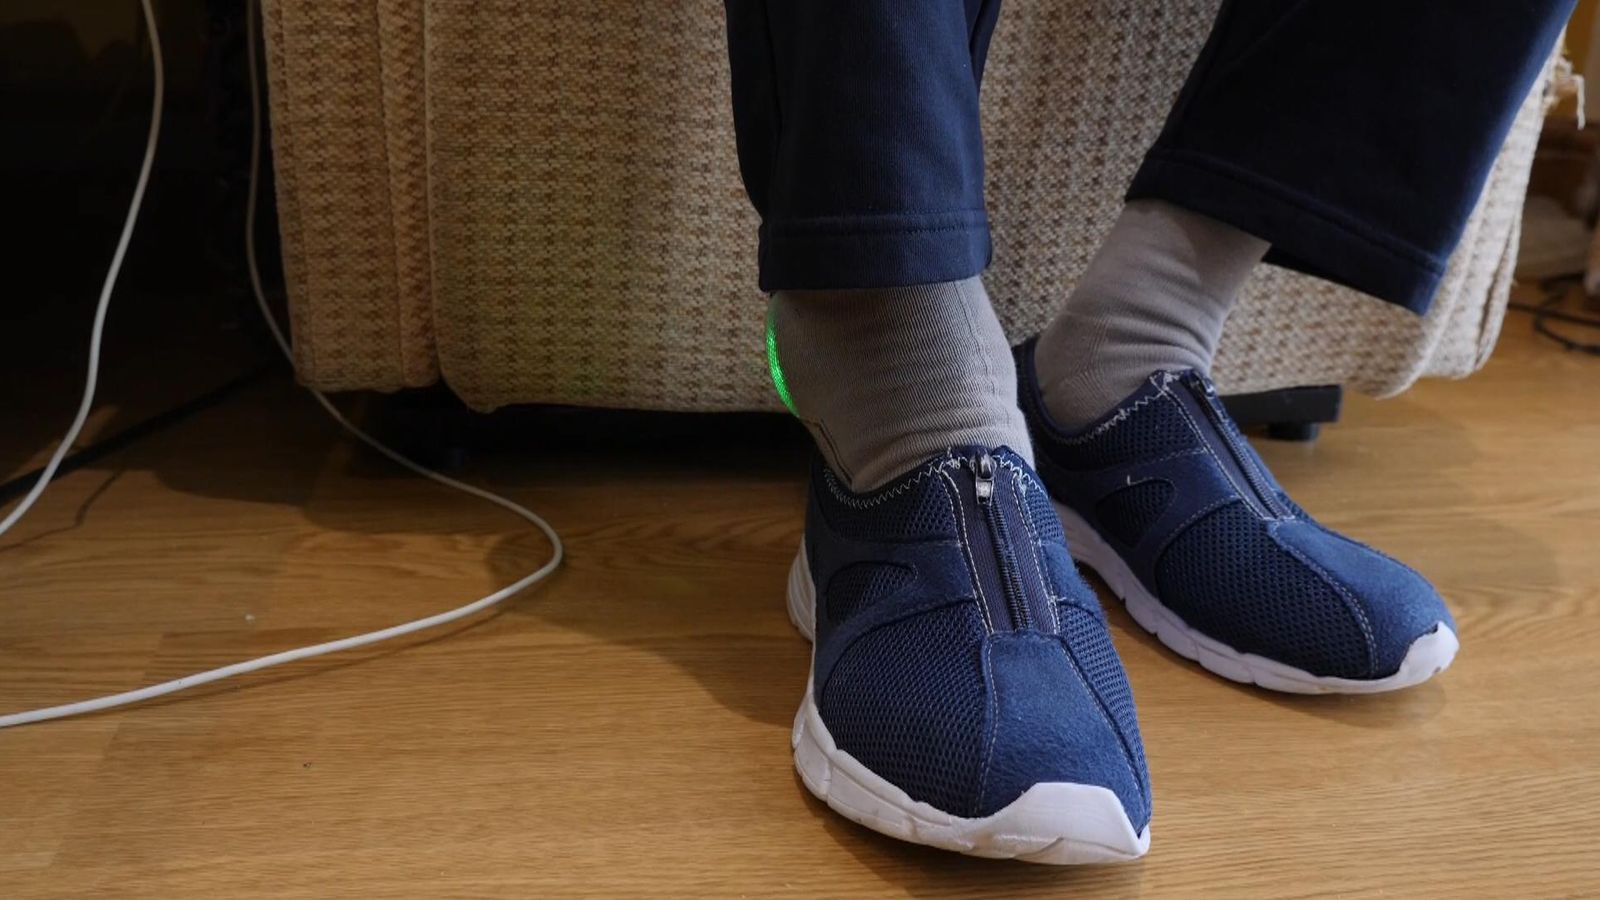 Високотехнологичните чорапи могат да предотвратят падания и заболявания при хора с деменция